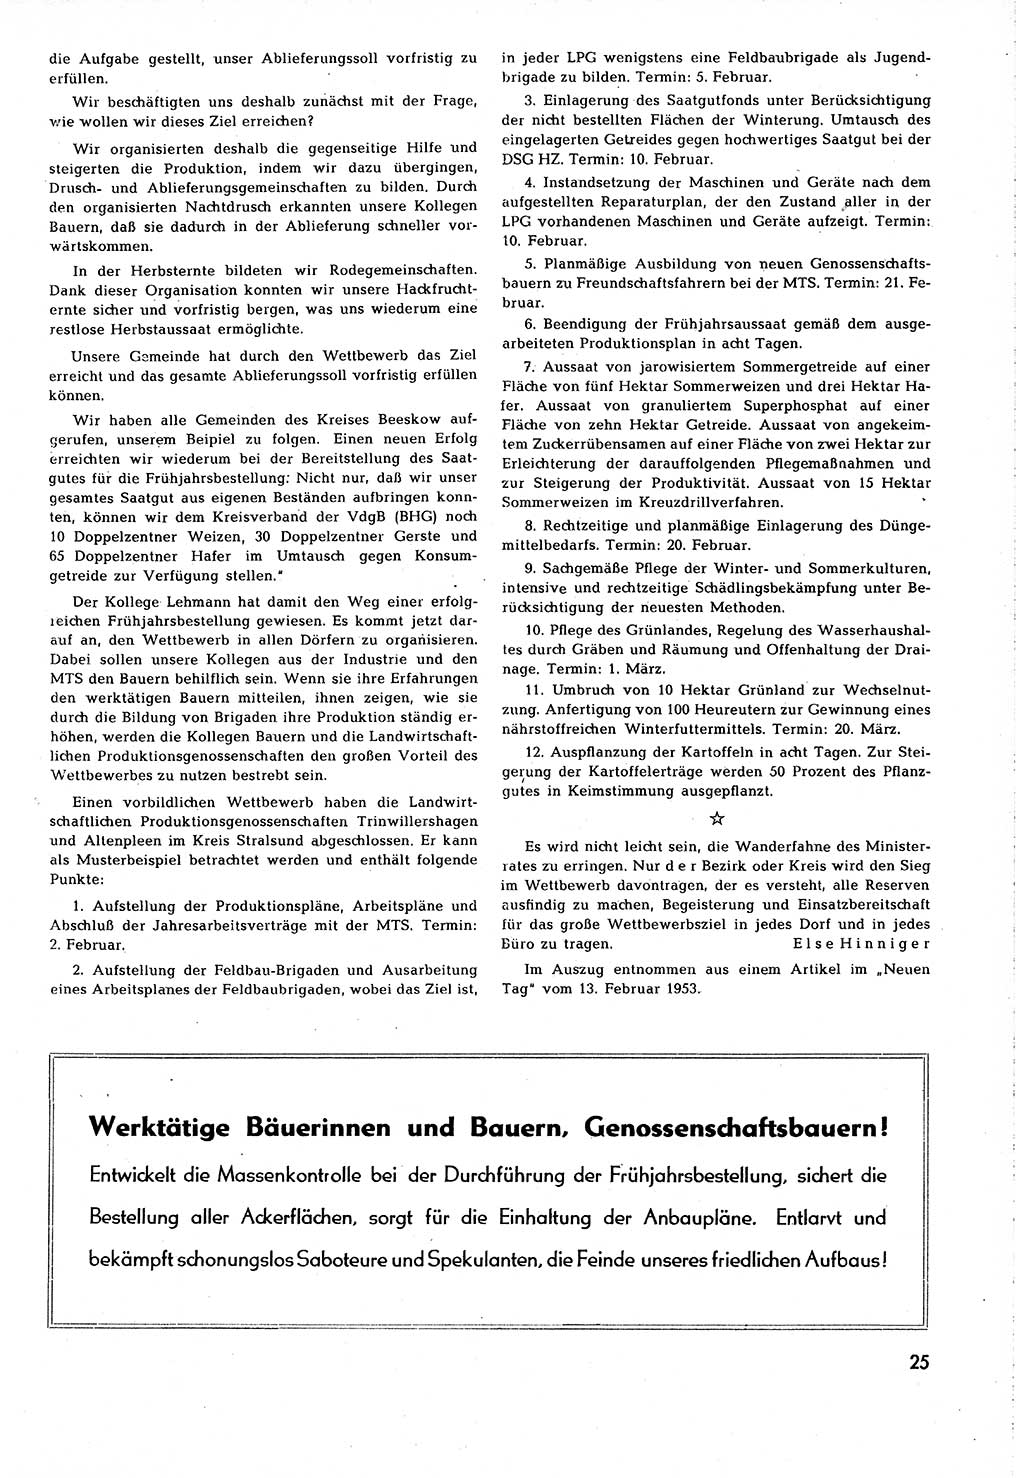 Neuer Weg (NW), Organ des Zentralkomitees (ZK) [Sozialistische Einheitspartei Deutschlands (SED)] für alle Parteiarbeiter, 8. Jahrgang [Deutsche Demokratische Republik (DDR)] 1953, Heft 4/25 (NW ZK SED DDR 1953, H. 4/25)